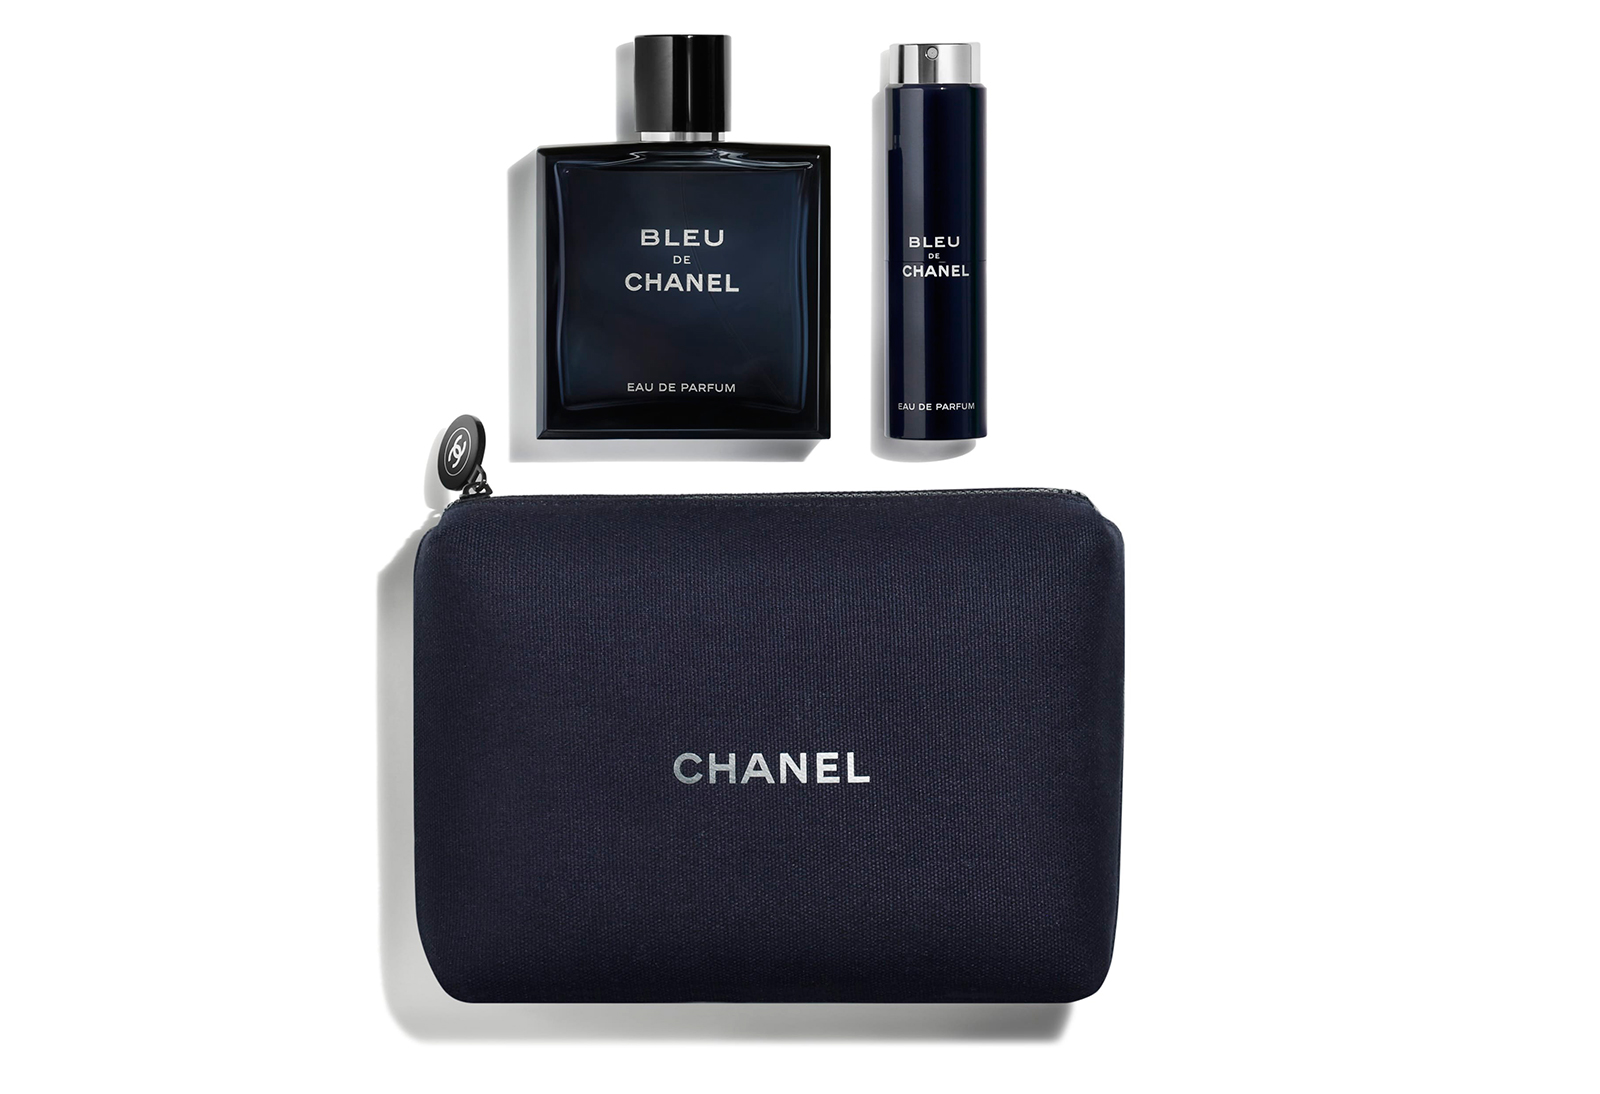 Chanel-Bleu-De-Chanel-Eau-de-Parfum-travel-set.jpg